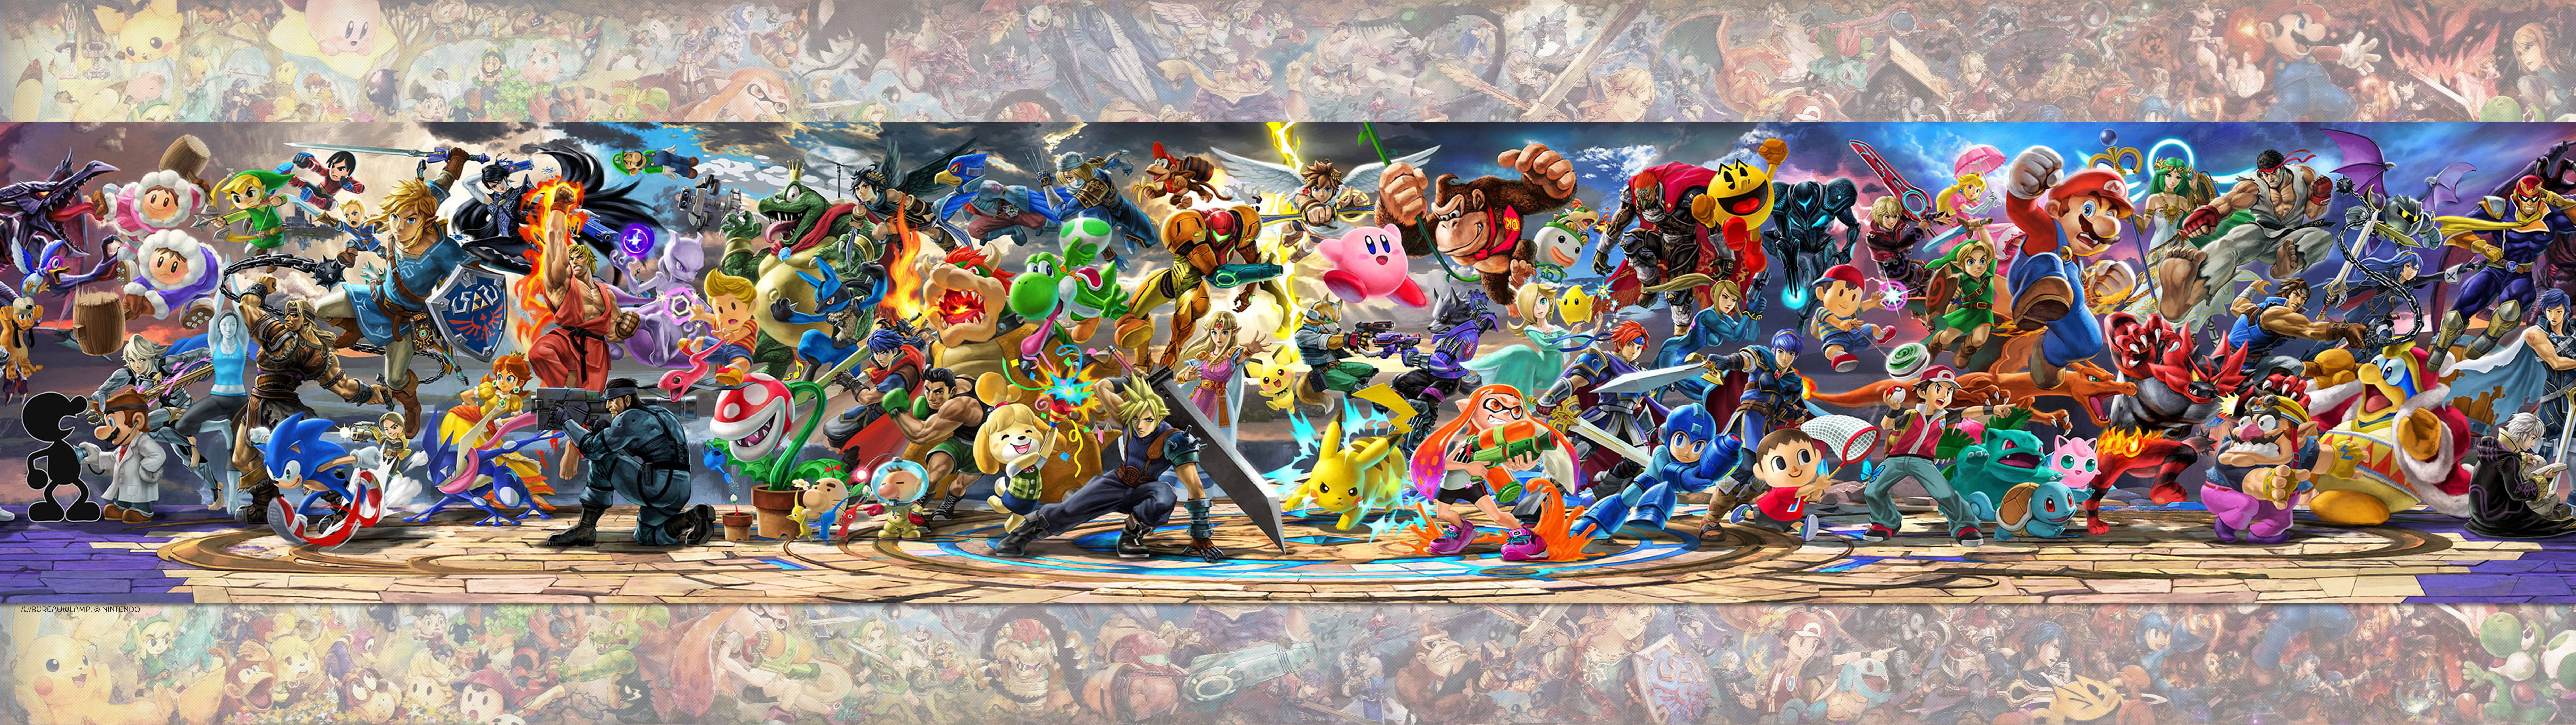 Super Smash Bros Ultimate Mural - HD Wallpaper 